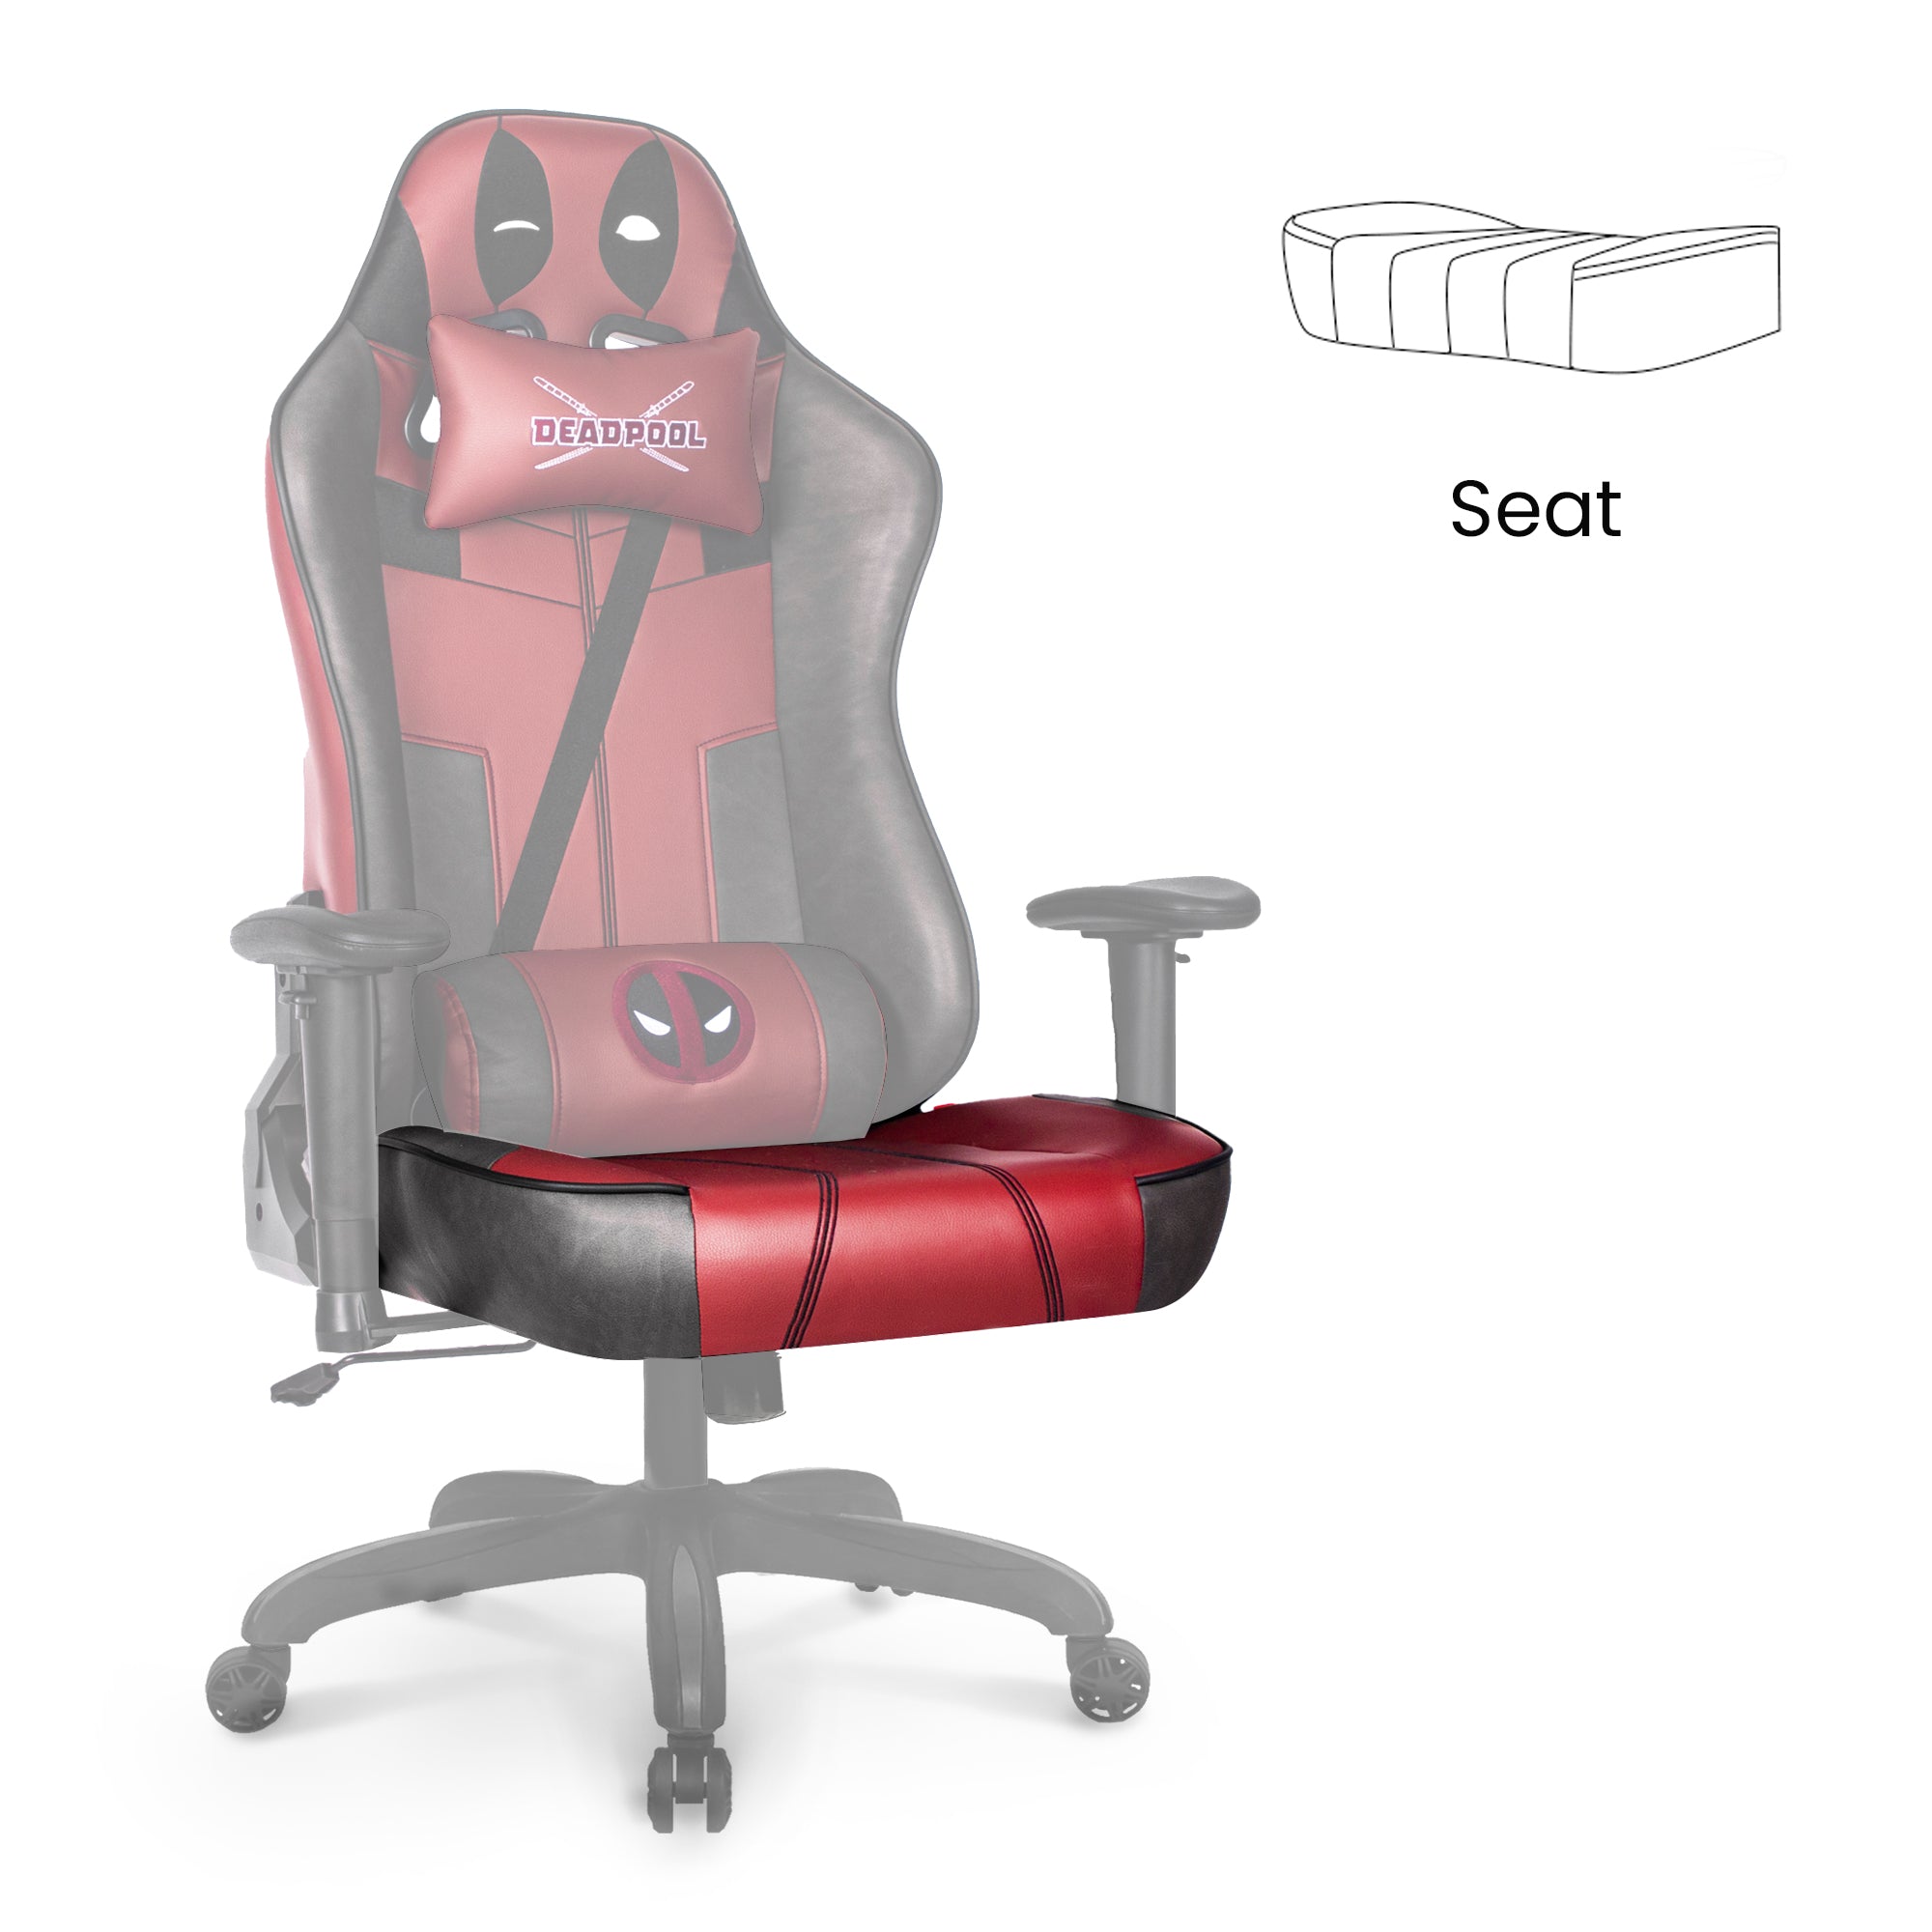 [part] RAP Seat